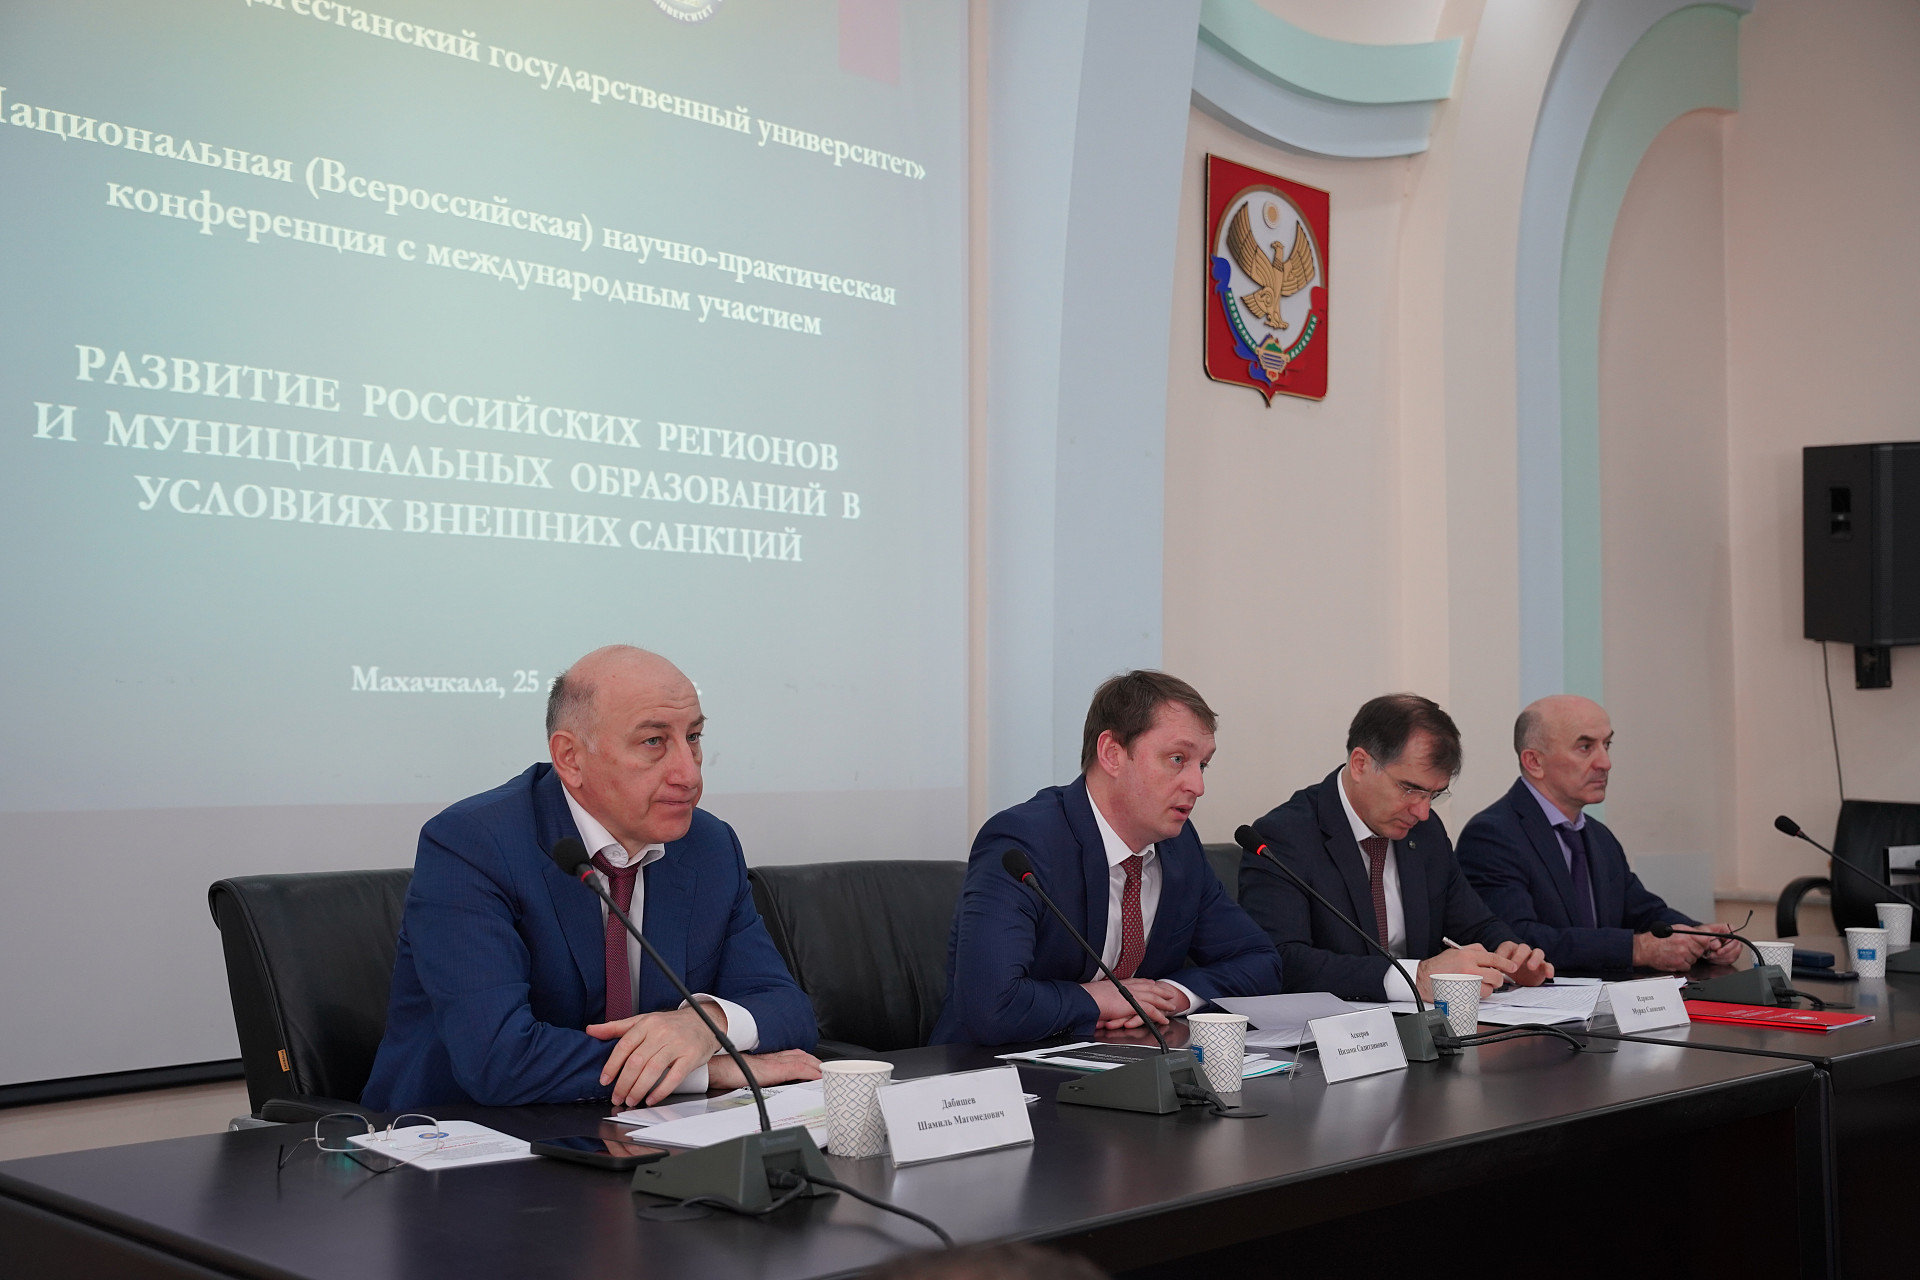 В ДГУ обсудили вопросы развития российских регионов в условиях внешних санкций